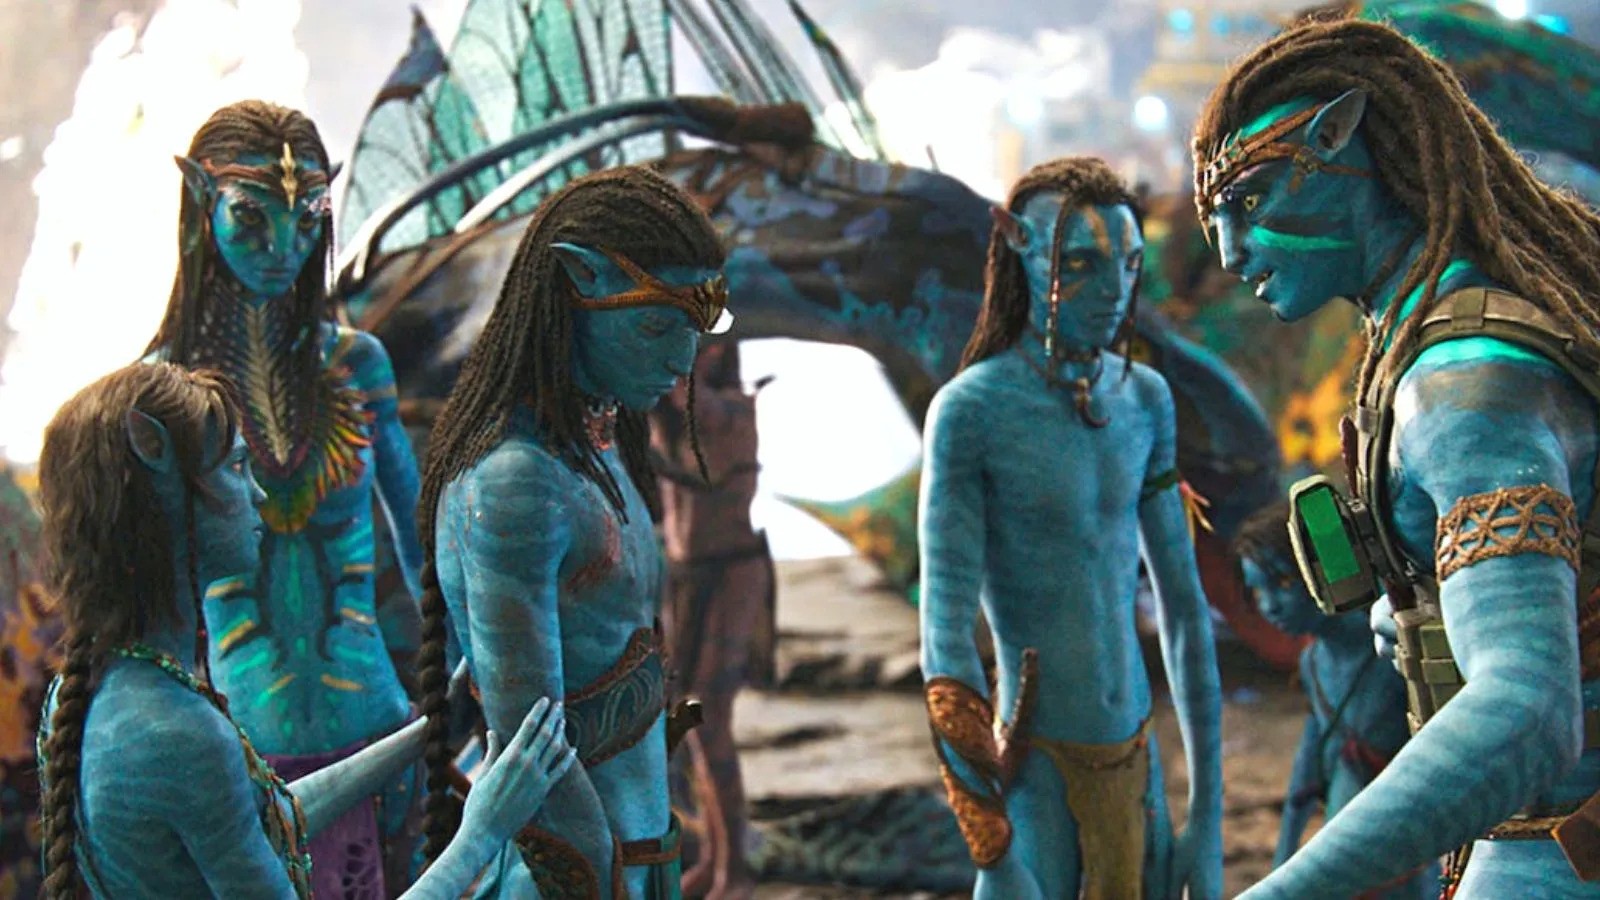 The Avatar family